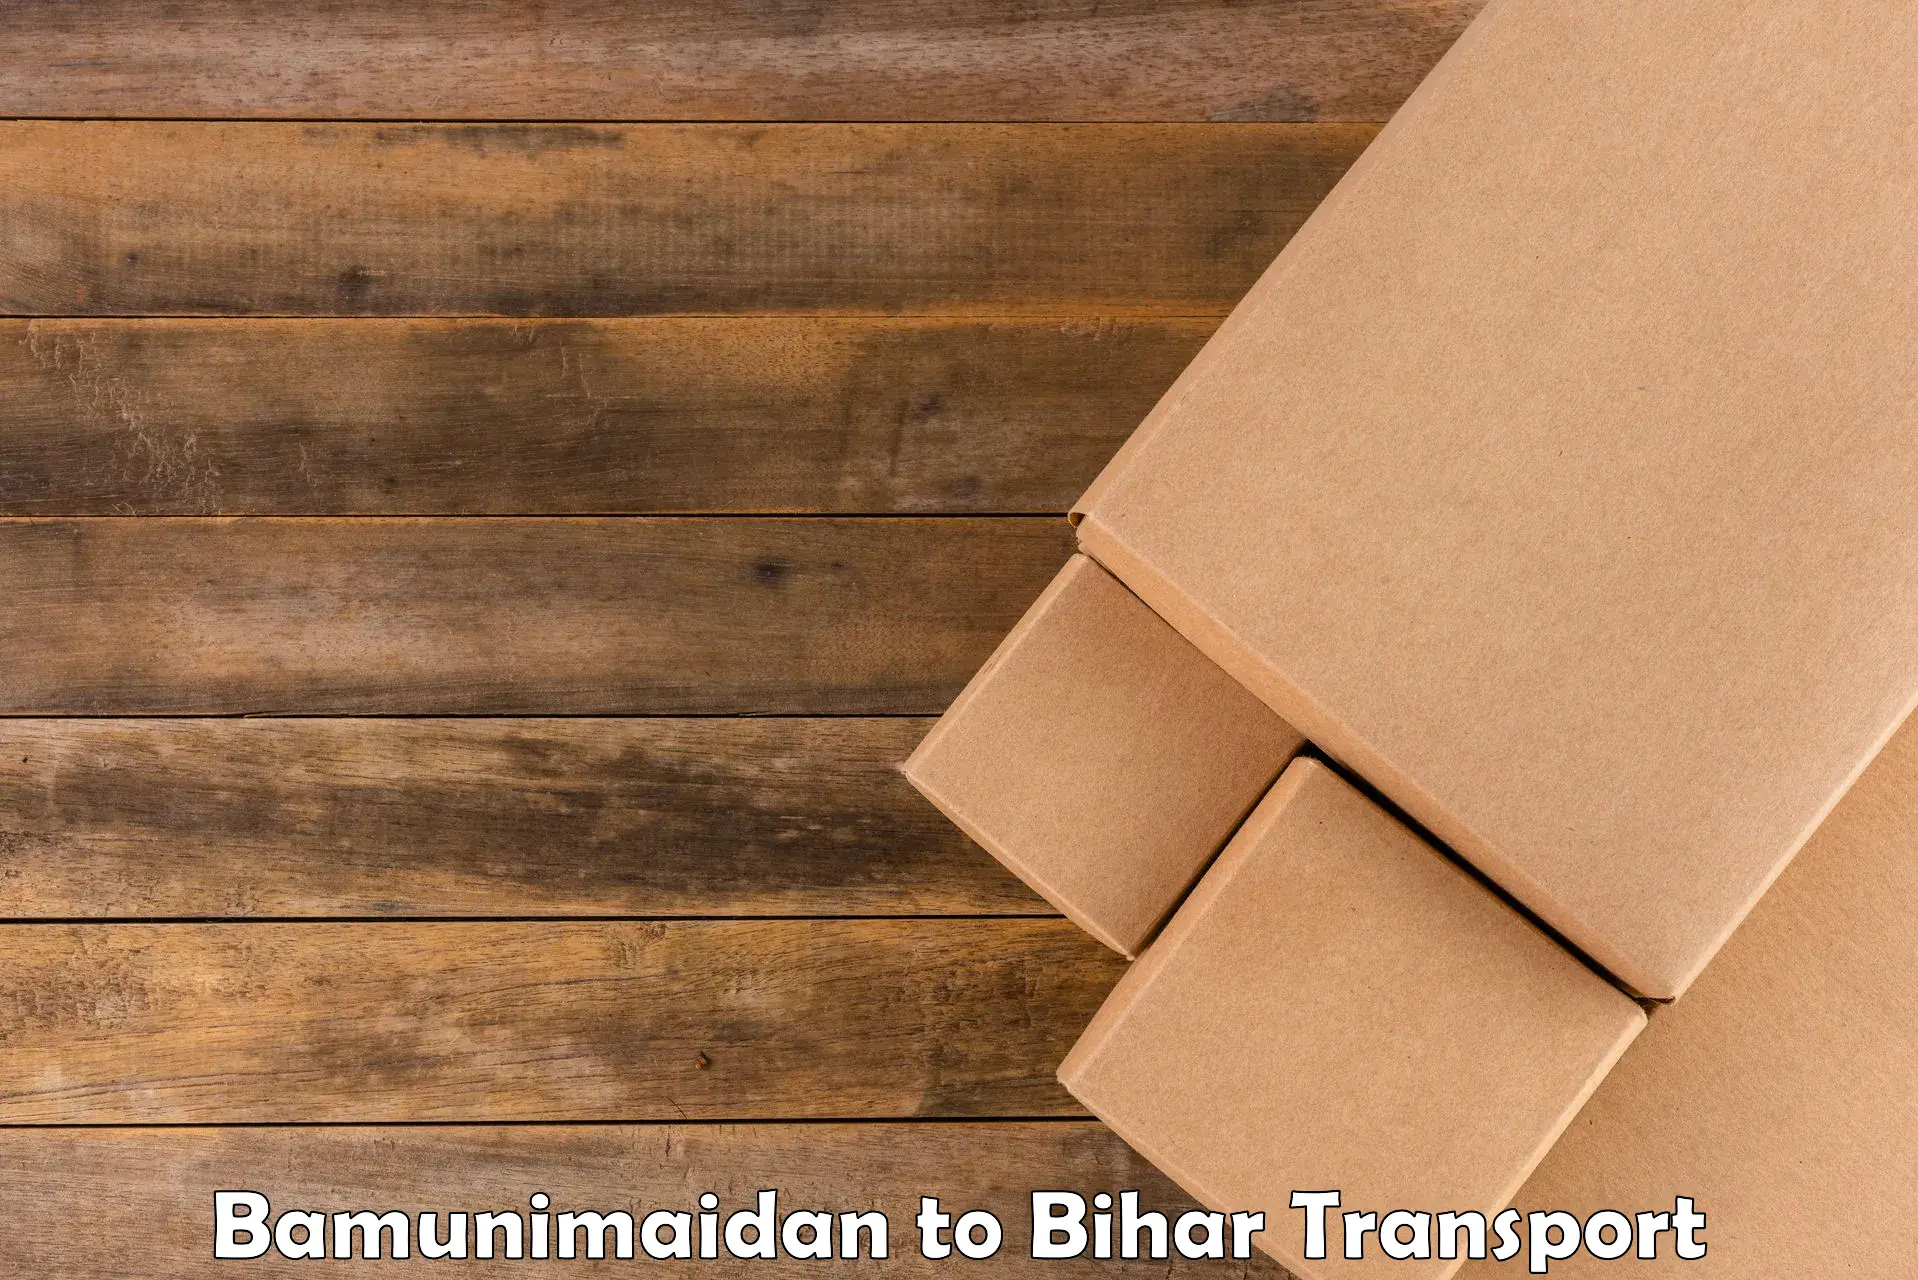 Bike shipping service Bamunimaidan to Bihar